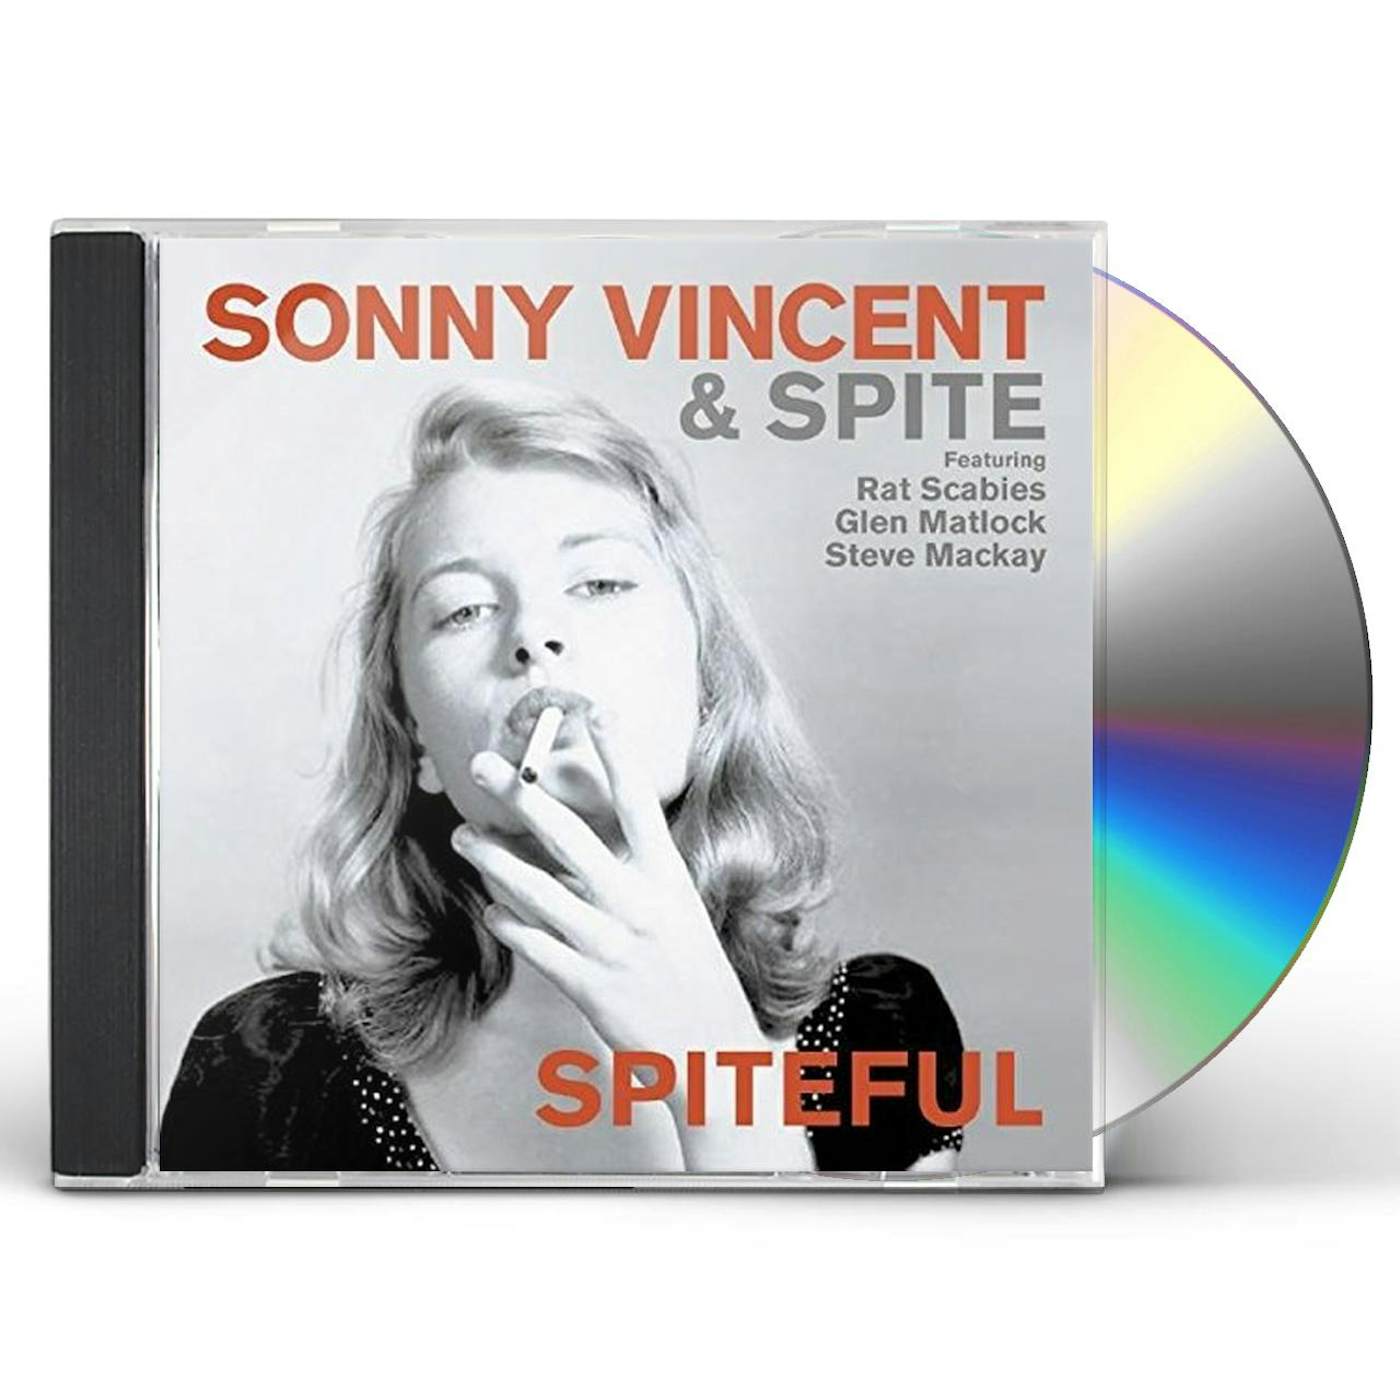 Sonny Vincent & Spite SPITEFUL CD